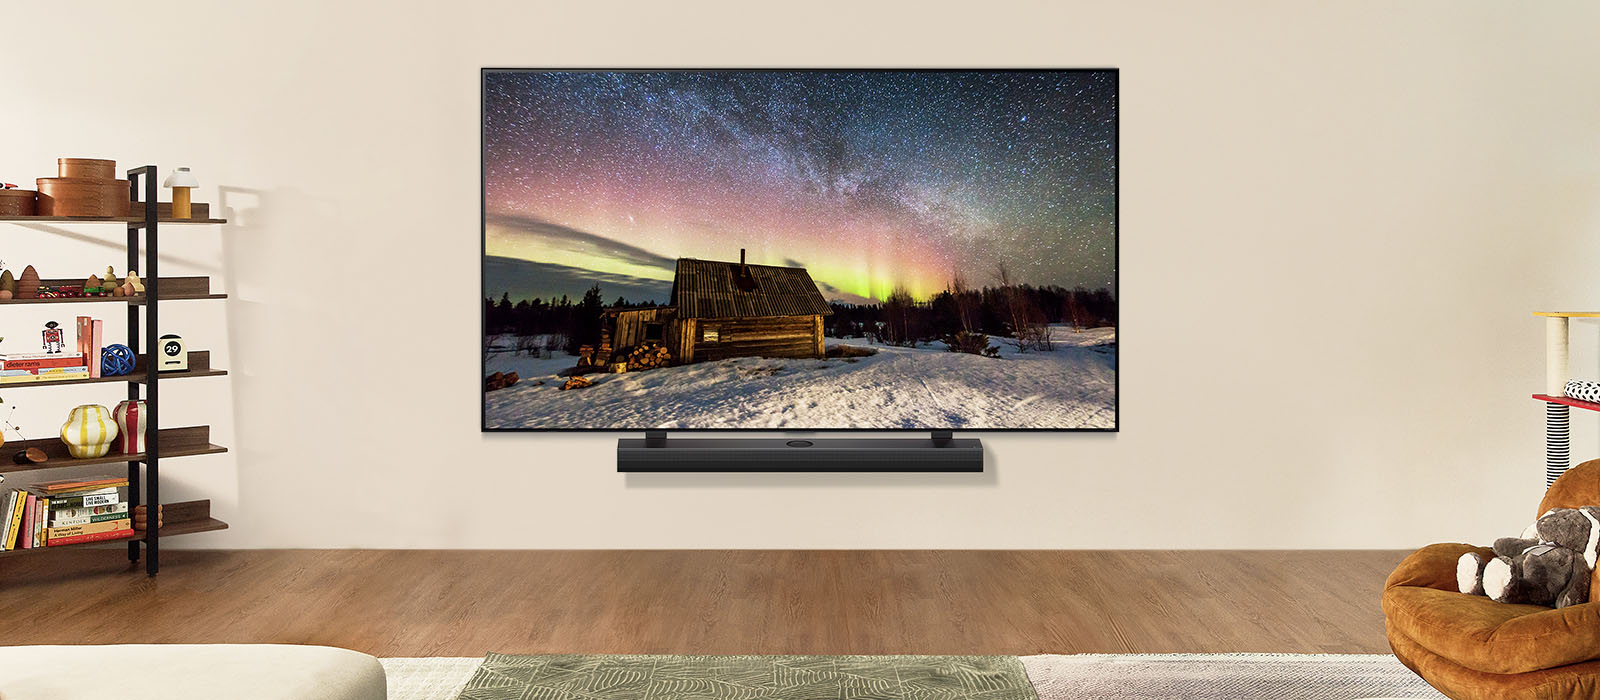 LG TV a LG Soundbar v modernom obytnom priestore počas dňa. Na obrazovke sa zobrazuje polárna žiara s ideálnou úrovňou jasu.